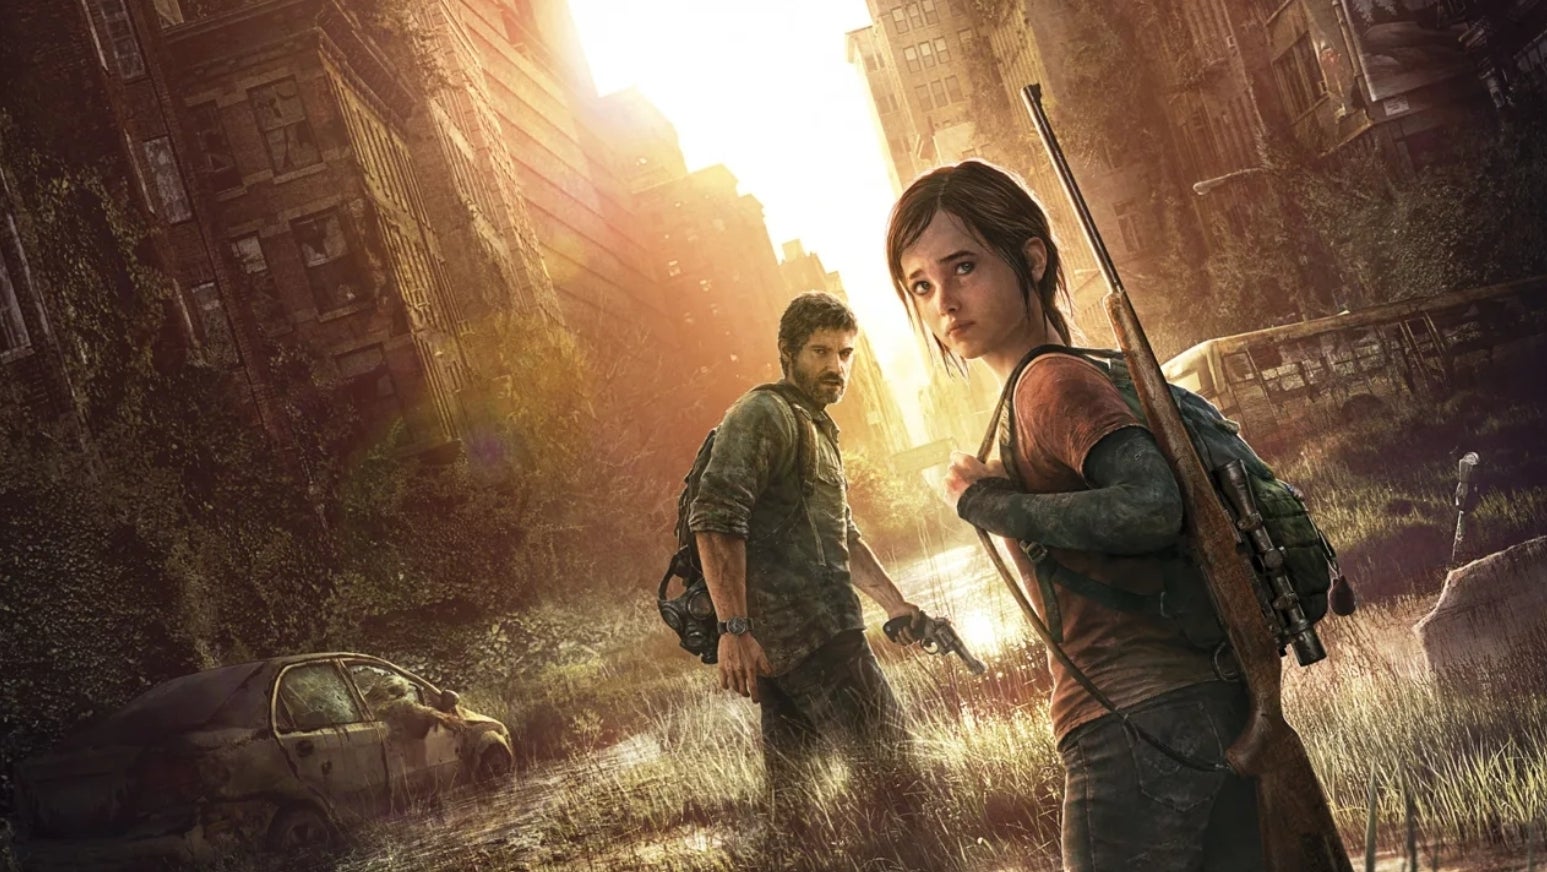 Imagen para The Last of Us tendrá una adaptación a serie en HBO